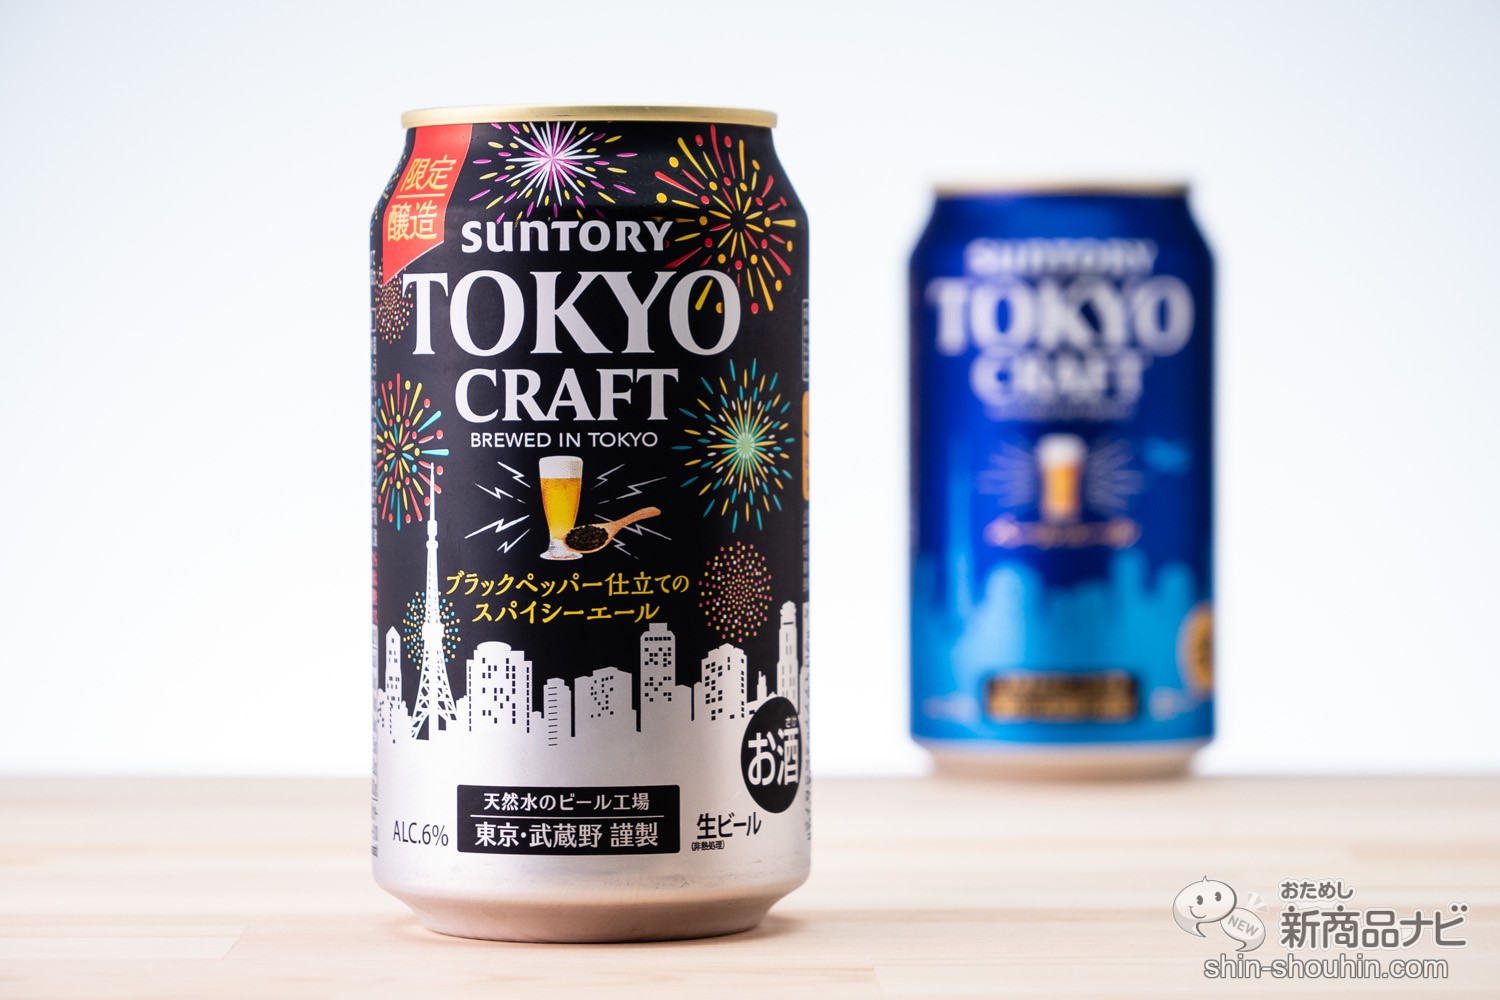 おためし新商品ナビ » Blog Archive » ビールに黒コショウ!? ピリッとくる『東京クラフト〈スパイシーエール〉』の味【飲みくらべ】